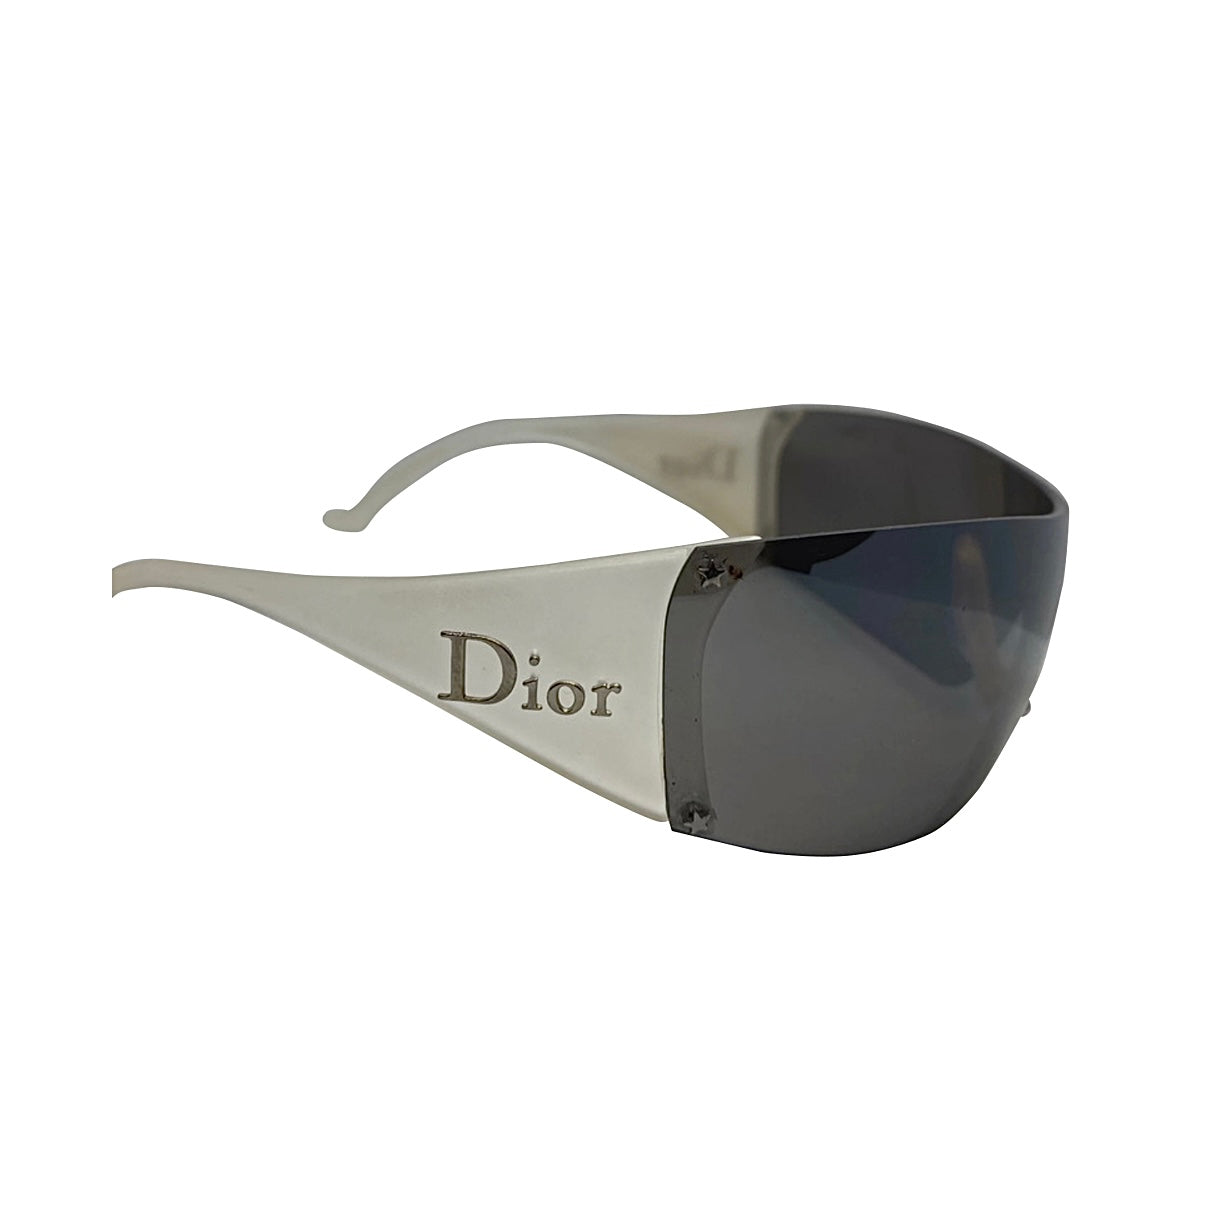 Dior, Accessories, Christian Dior Ski Goggles